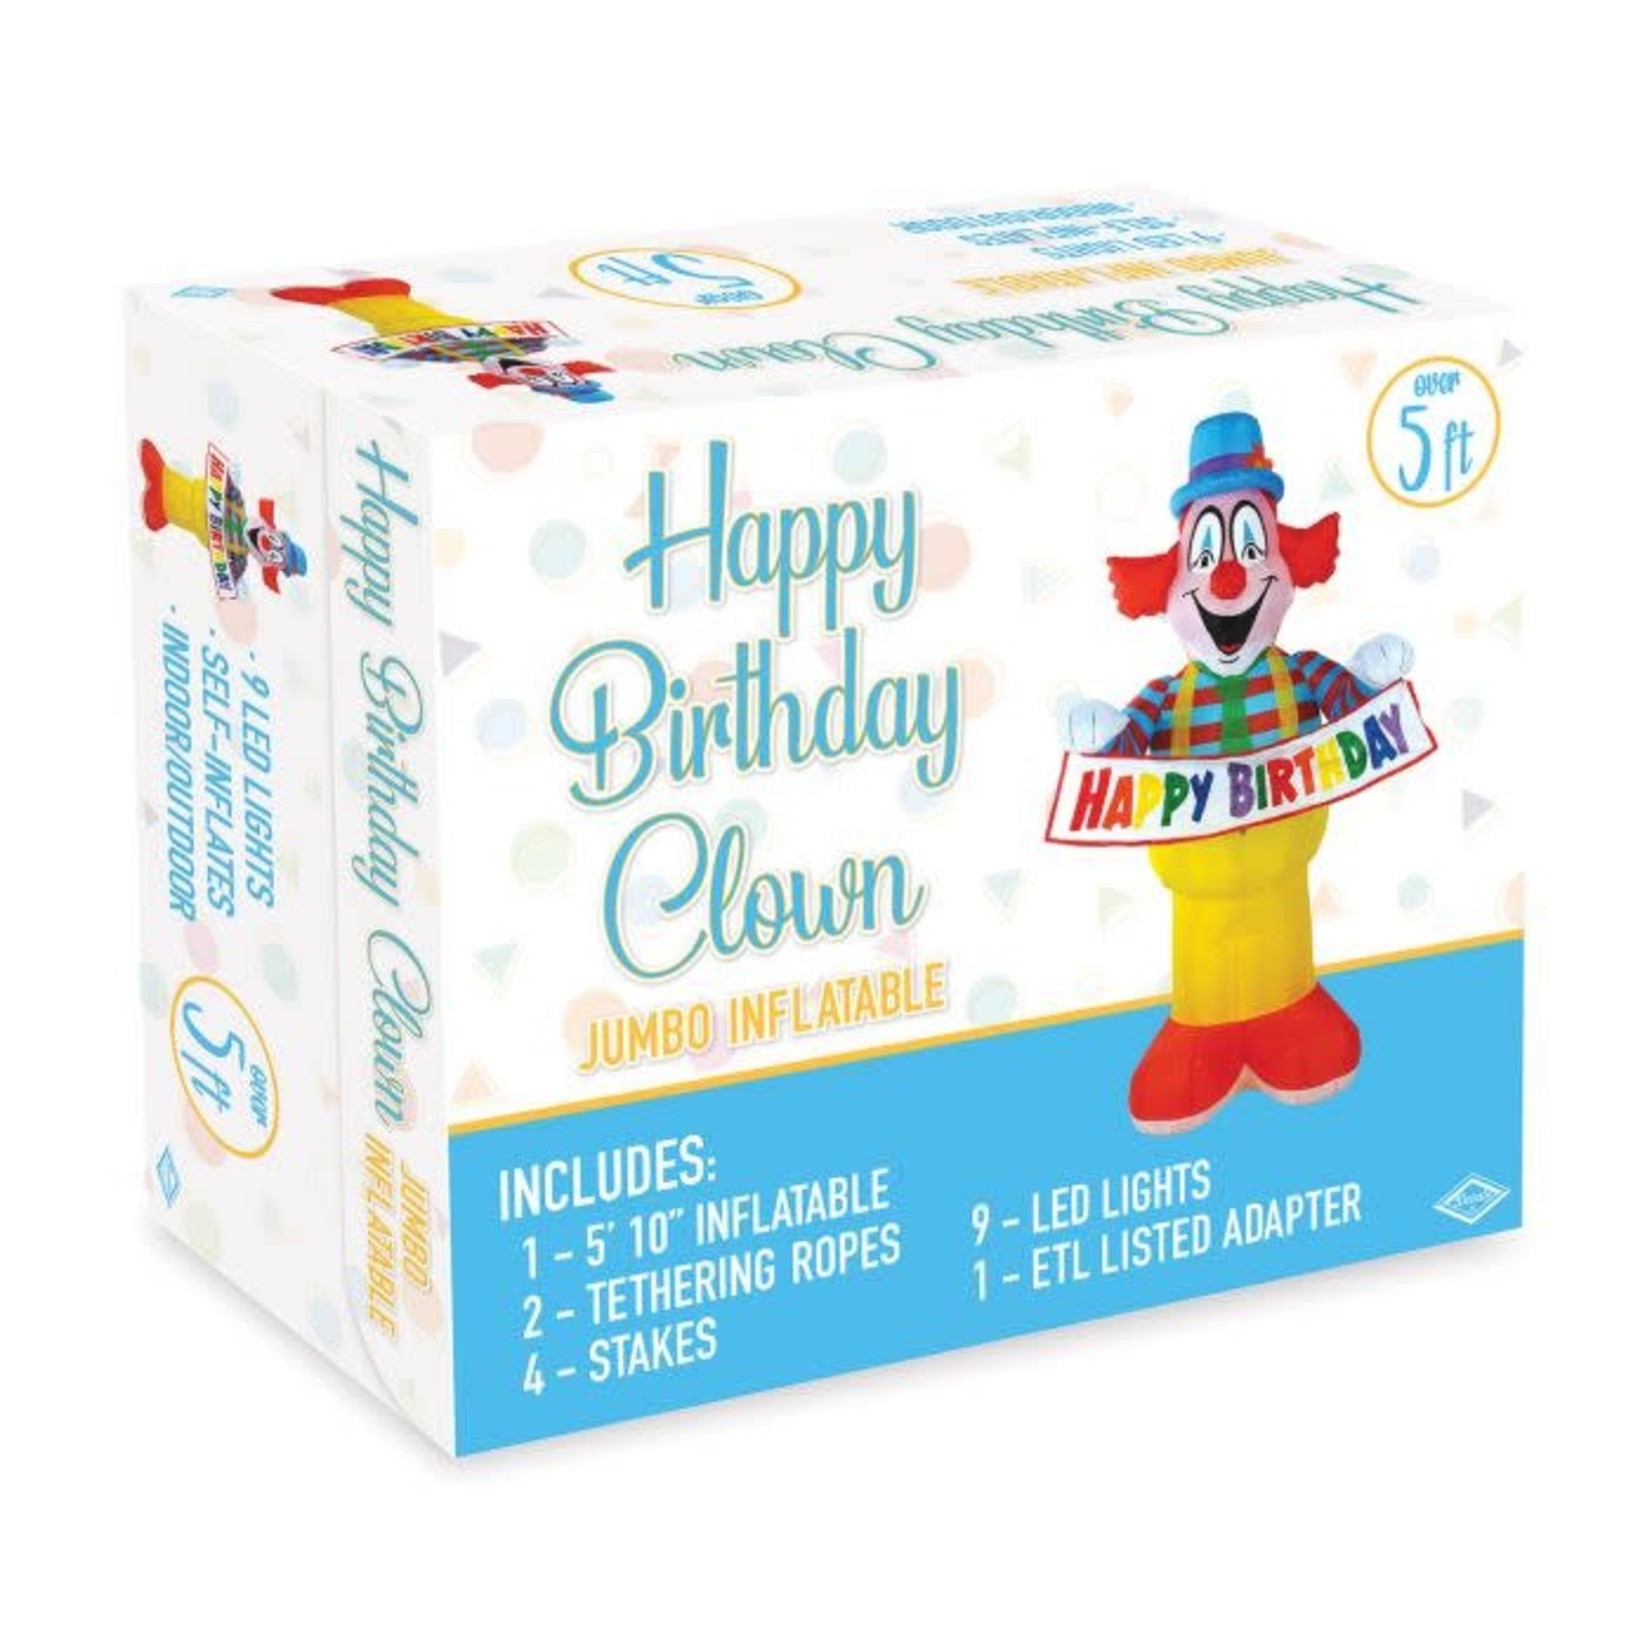 Beistle Inflatable Happy Birthday Clown Jumbo - Indoor/Outdoor